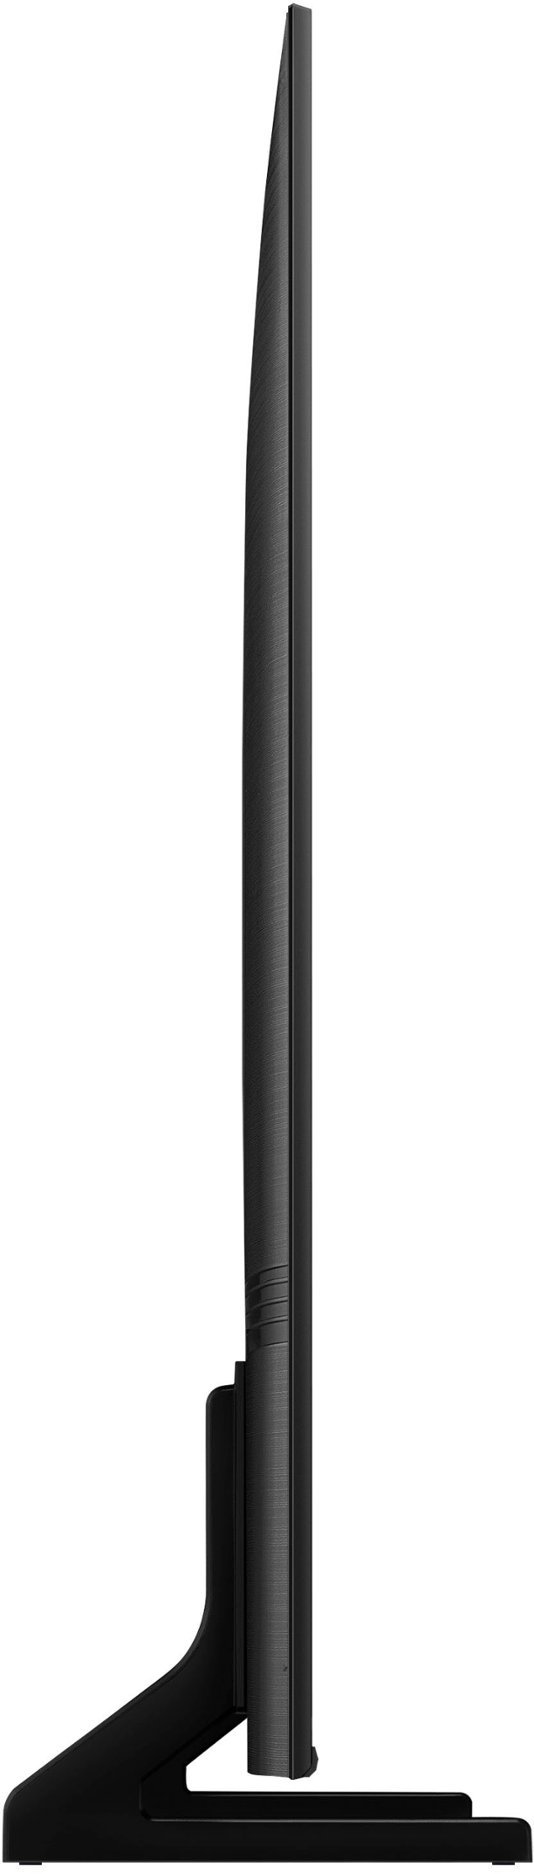 SAMSUNG Q60C PROFILE